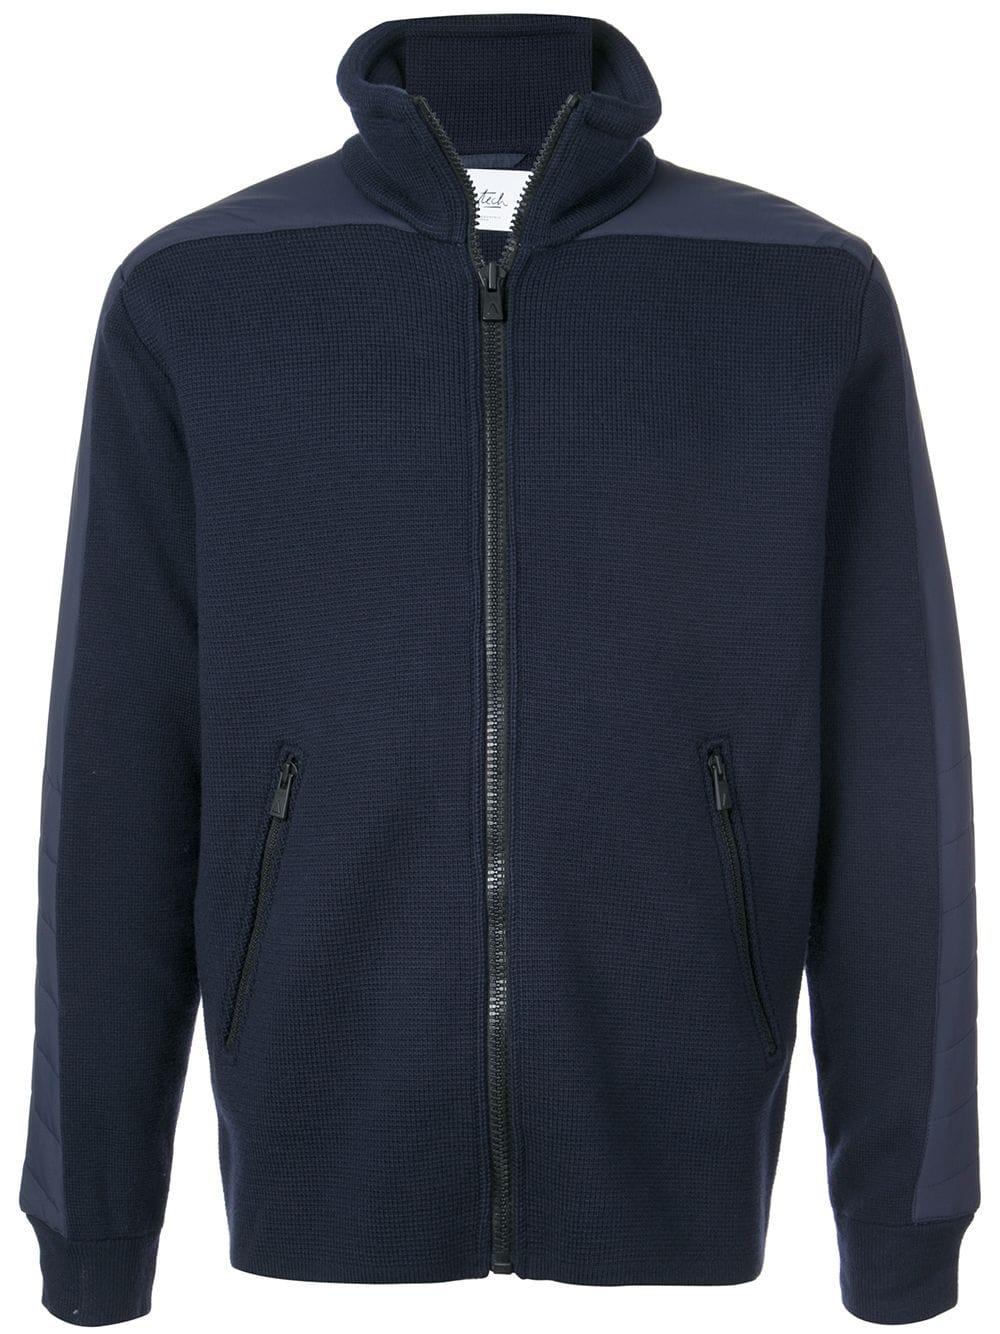 Aztech Mountain Wool Contrast Side Panel Knit Jacket in Blue for Men - Lyst